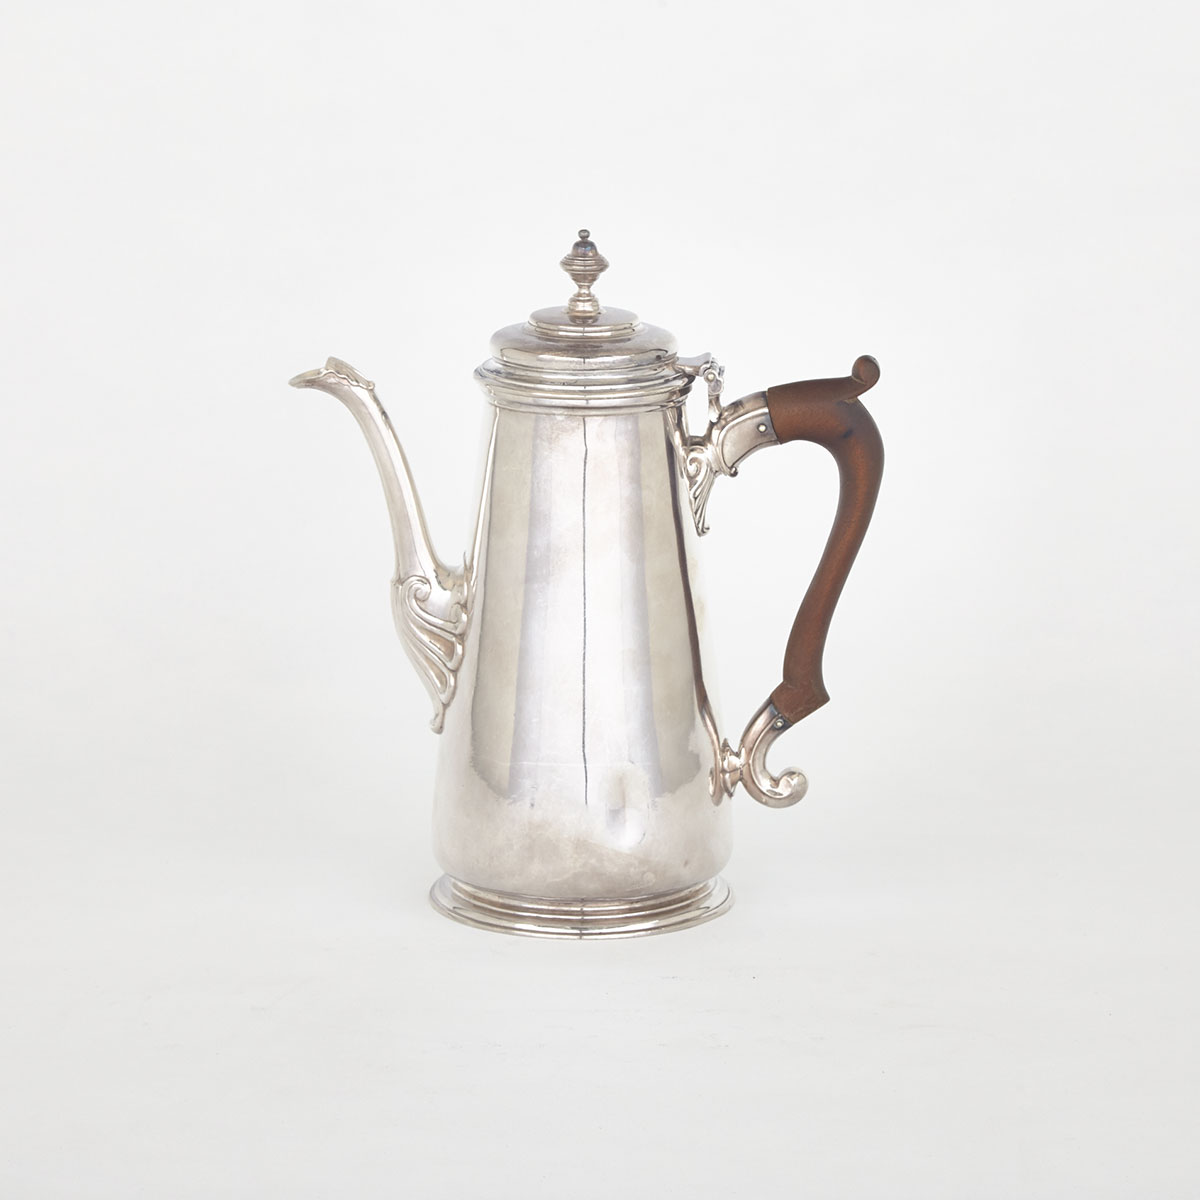 George II Silver Coffee Pot, John Barbe, London, 1737